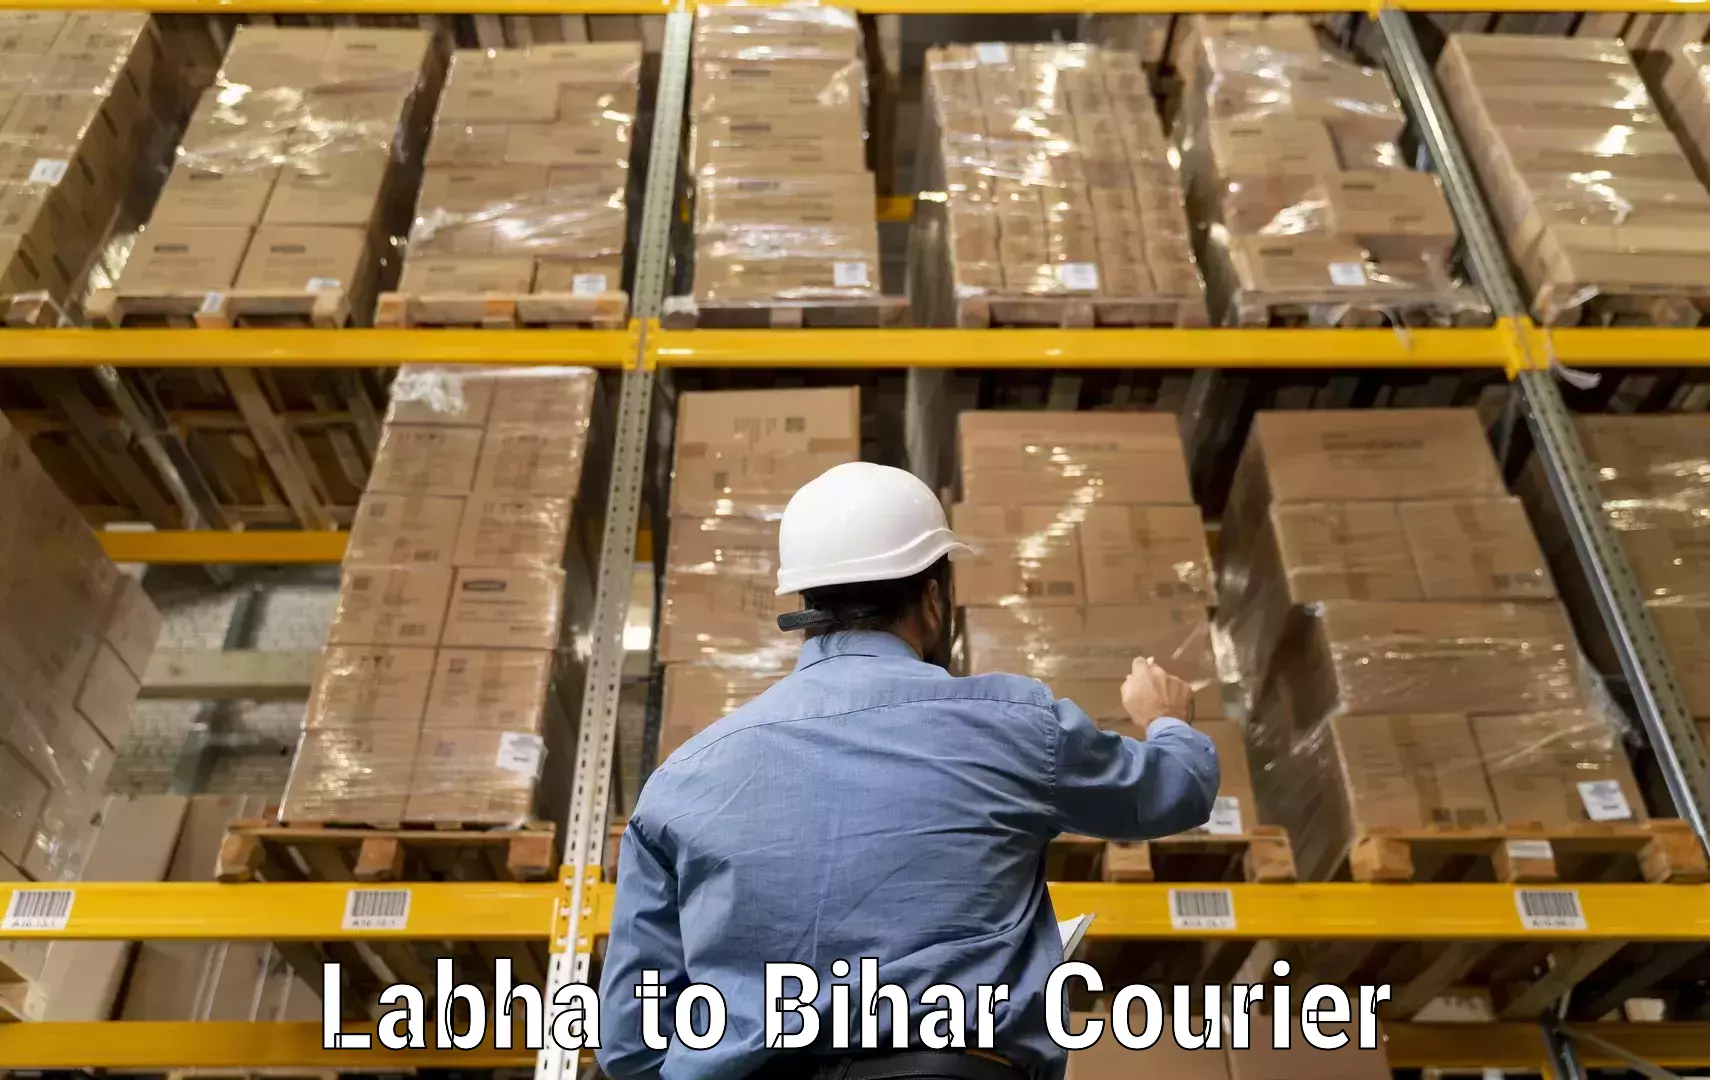 Courier service comparison Labha to Mojharia